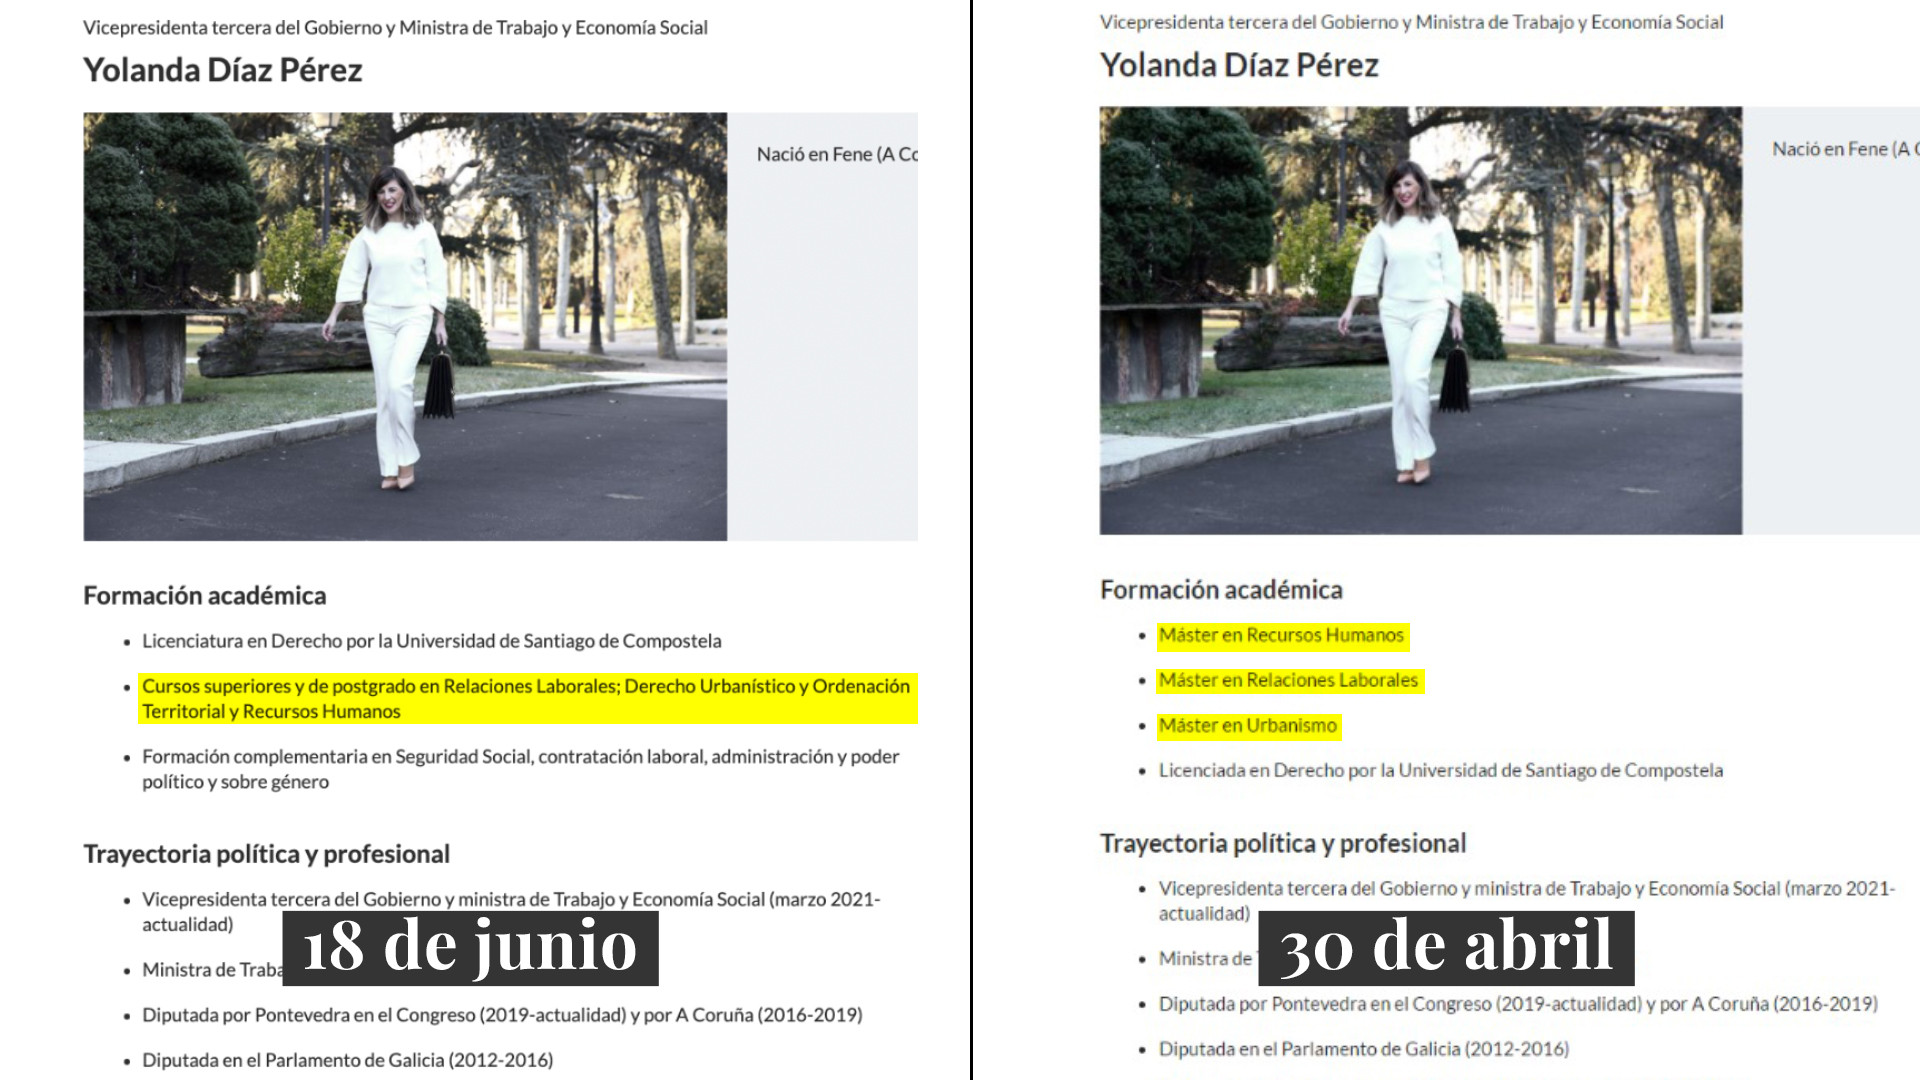 A la izquierda, la formación académica de Yolanda Díaz a fecha de 18 de junio; a la derecha, a fecha de 30 de abril.